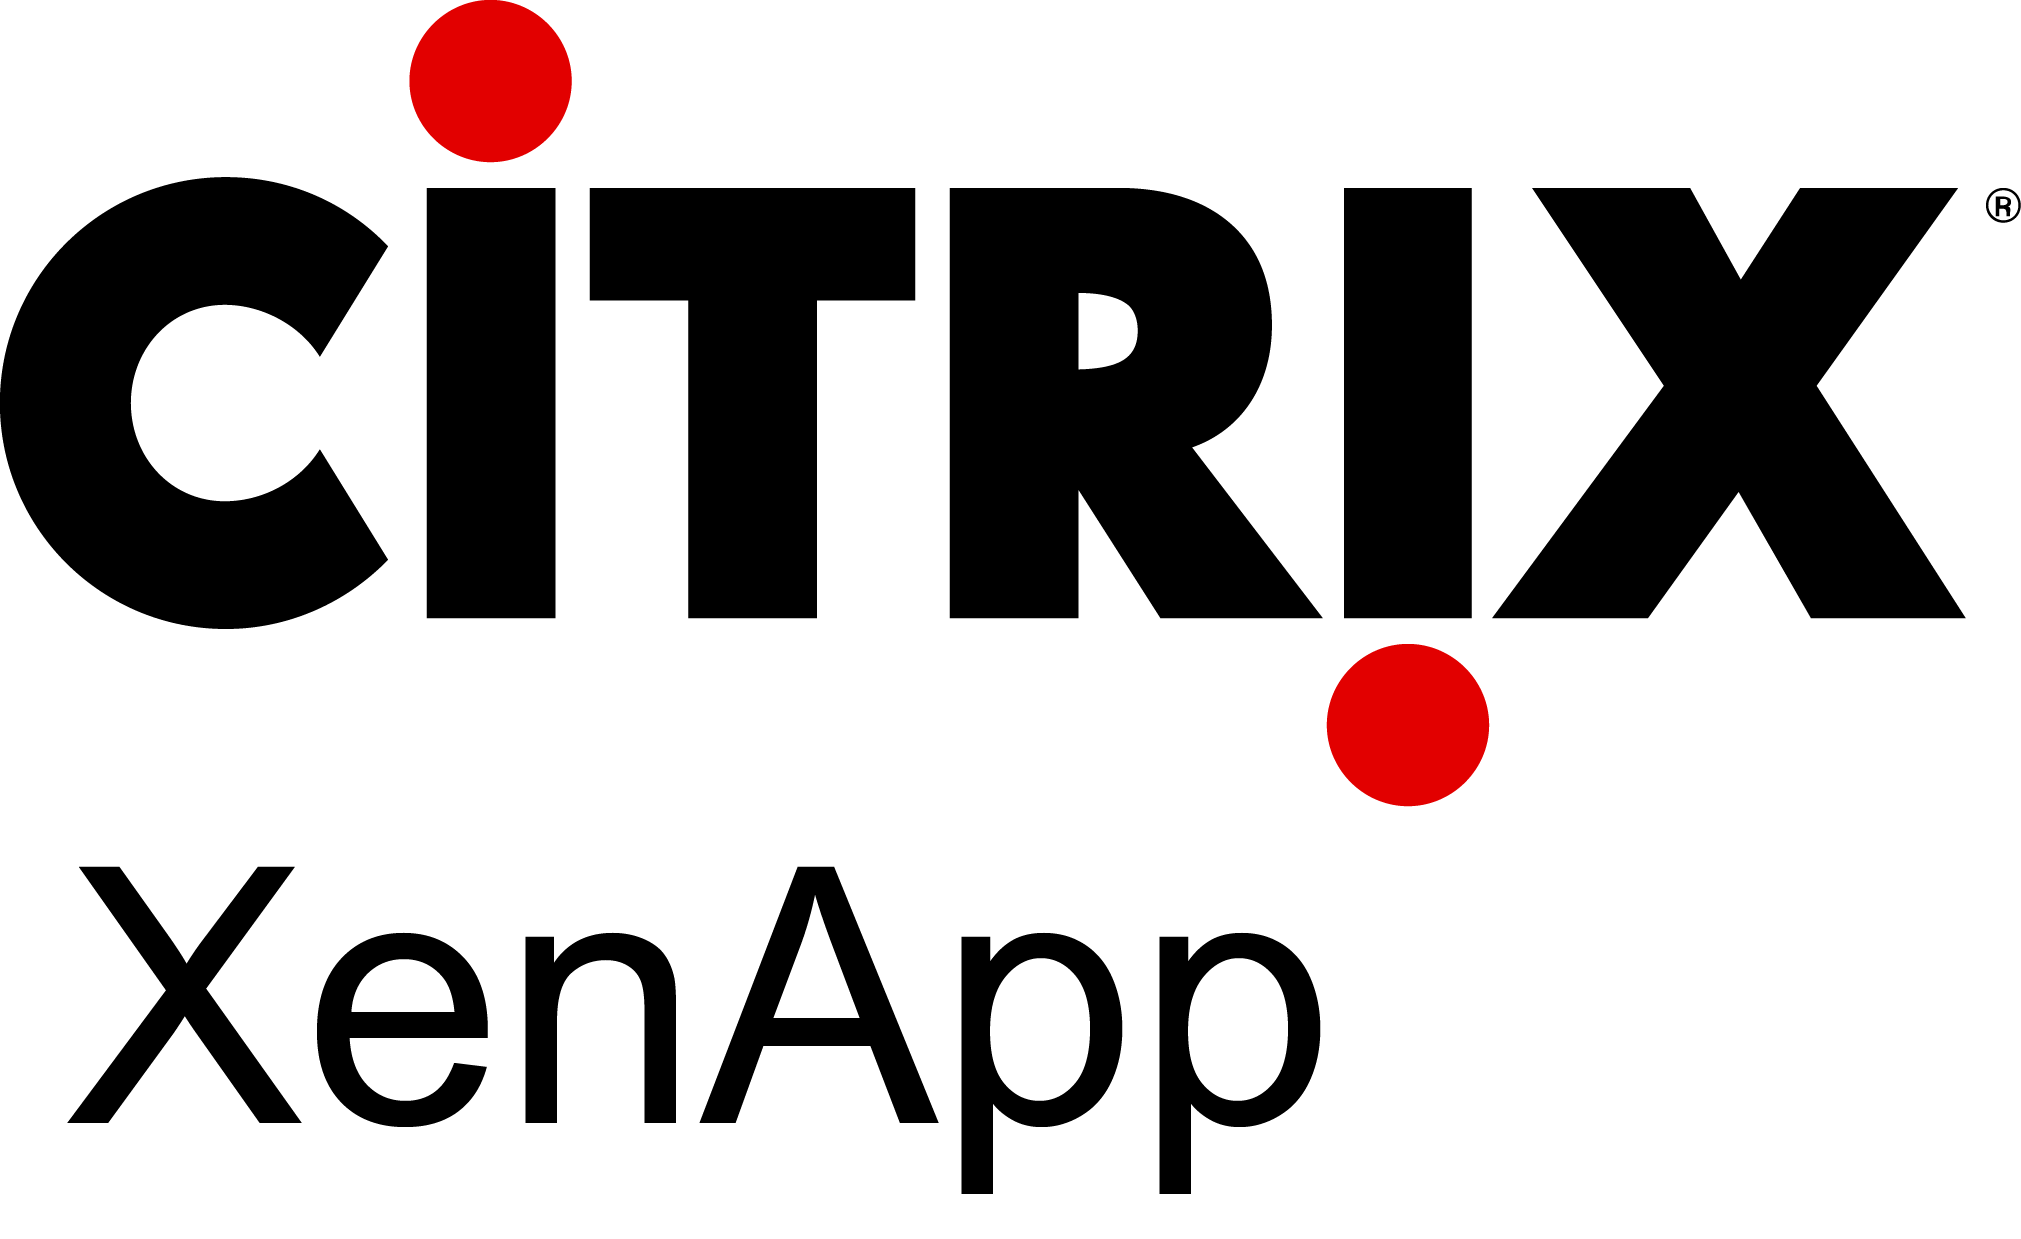 Citrix Logo - Citrix Xenapp Logo Vector Free Download